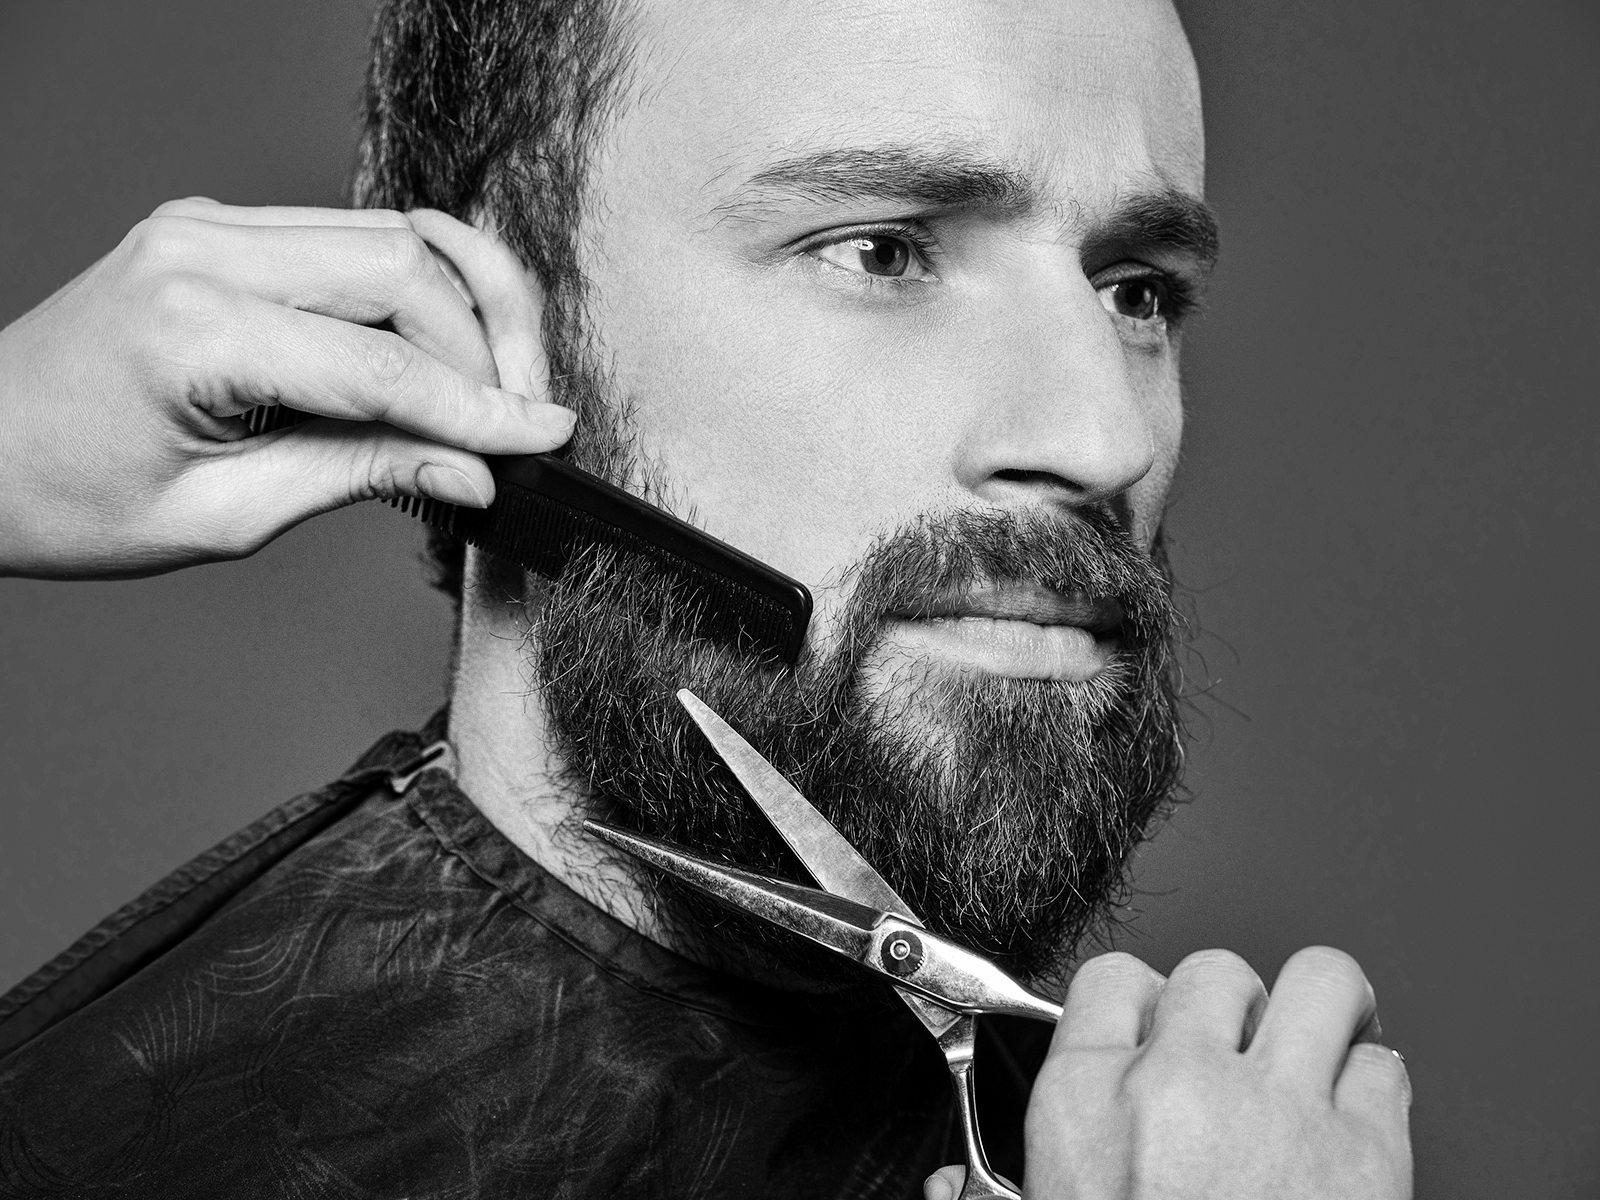 По бородок по ставка по мастерье. Мужские барбер стрижки бороды и усов. Барбер моделирование бороды. Мужские стрижки с бородой. Красивая стрижка бороды.